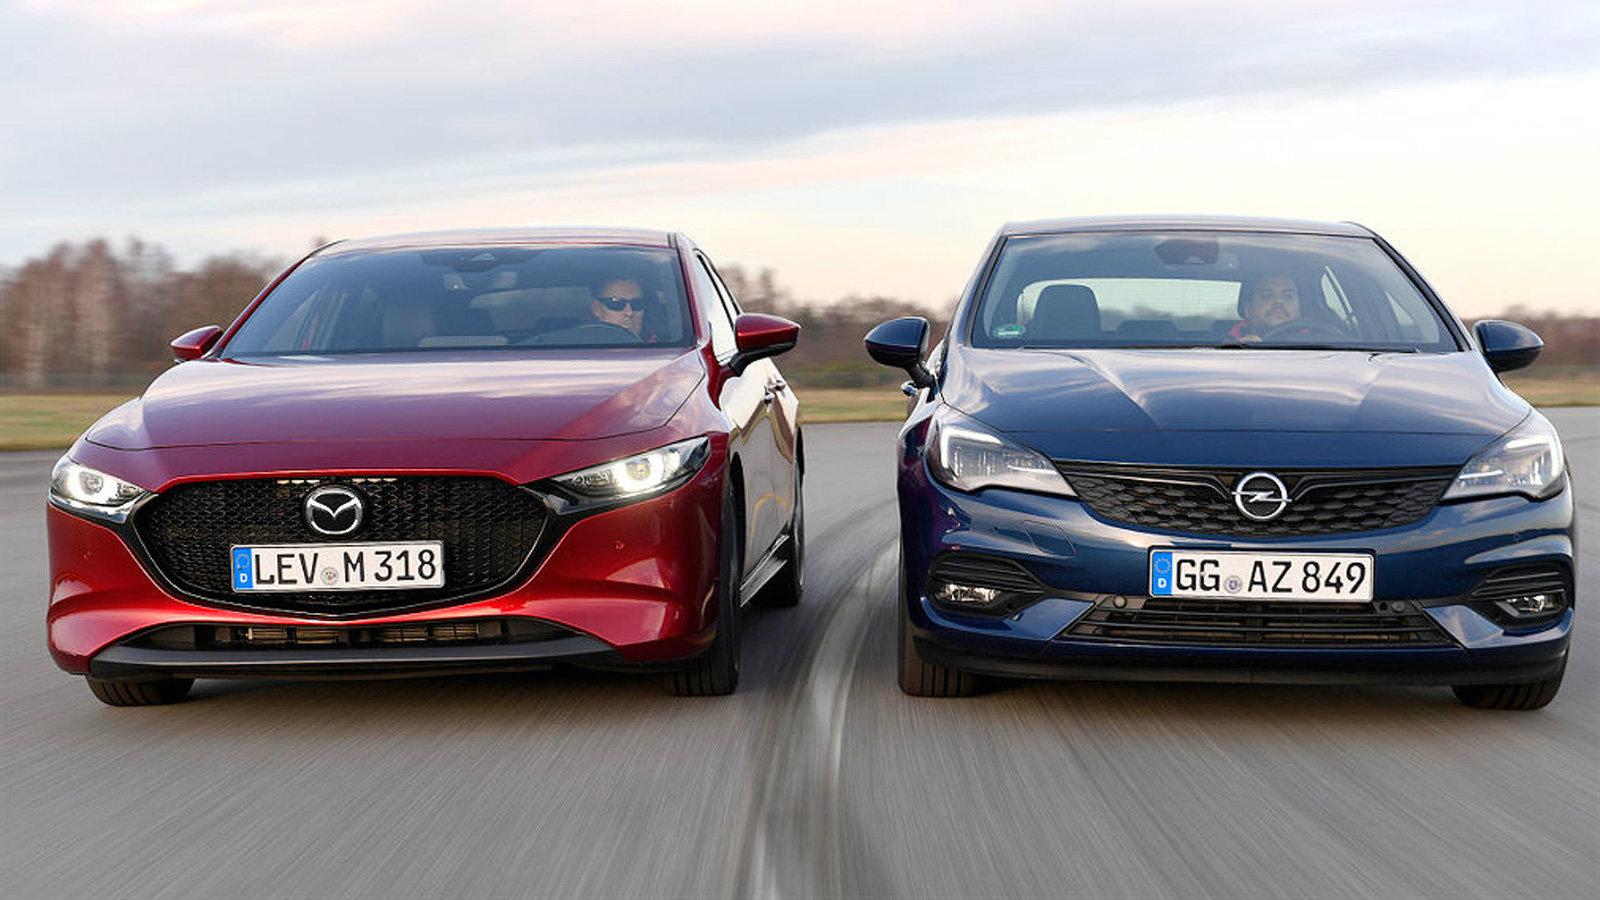 Συγκρίνουμε το νέο Opel Astra με το Mazda 3